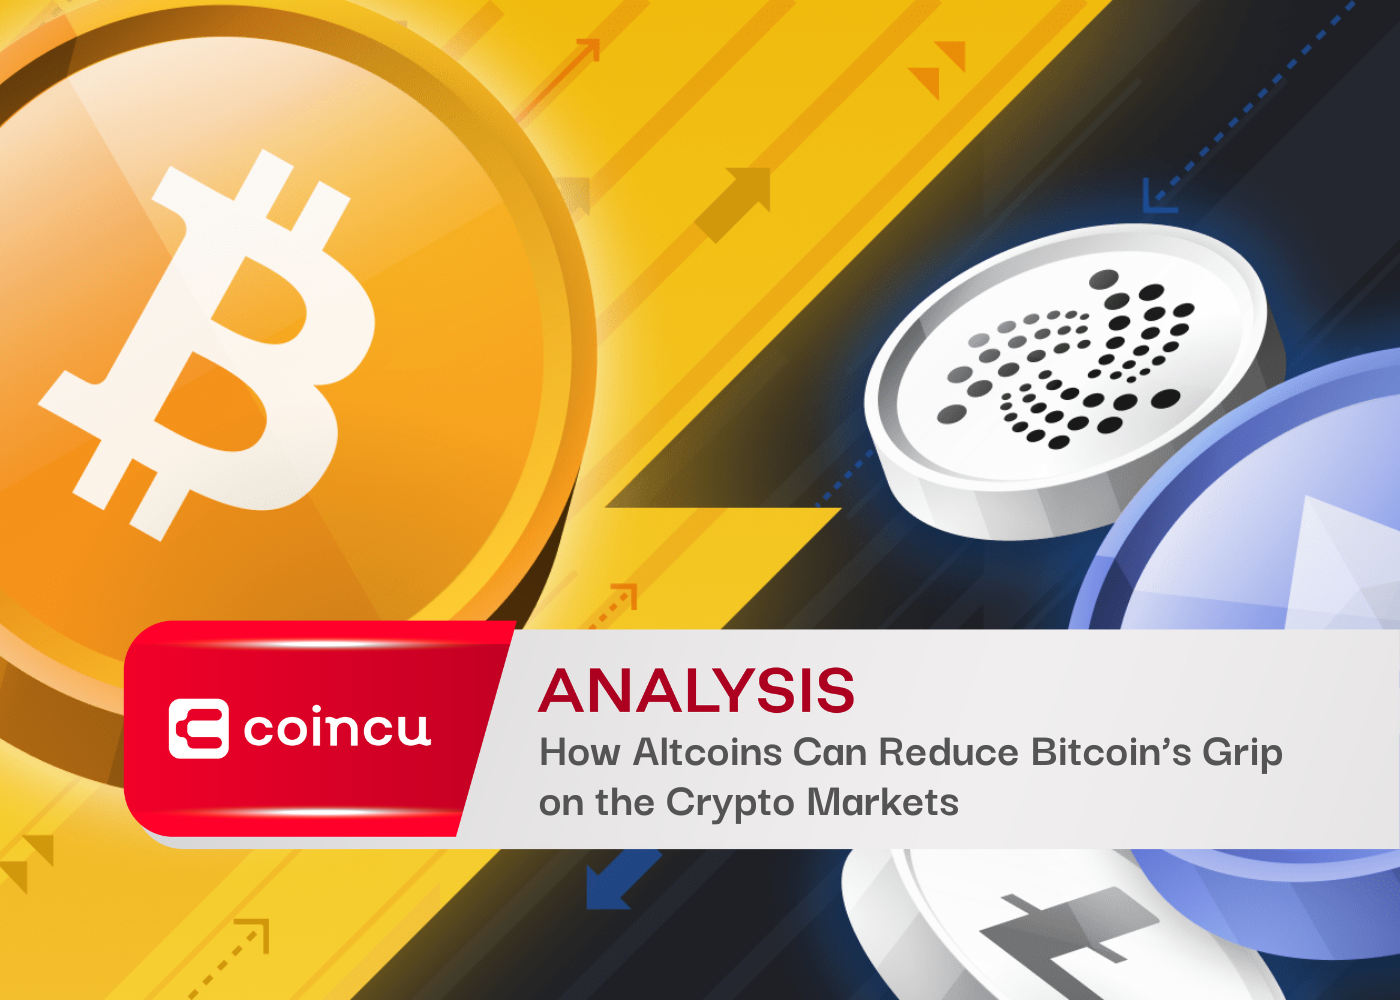 Como as Altcoins podem reduzir o controle do Bitcoin nos mercados criptográficos